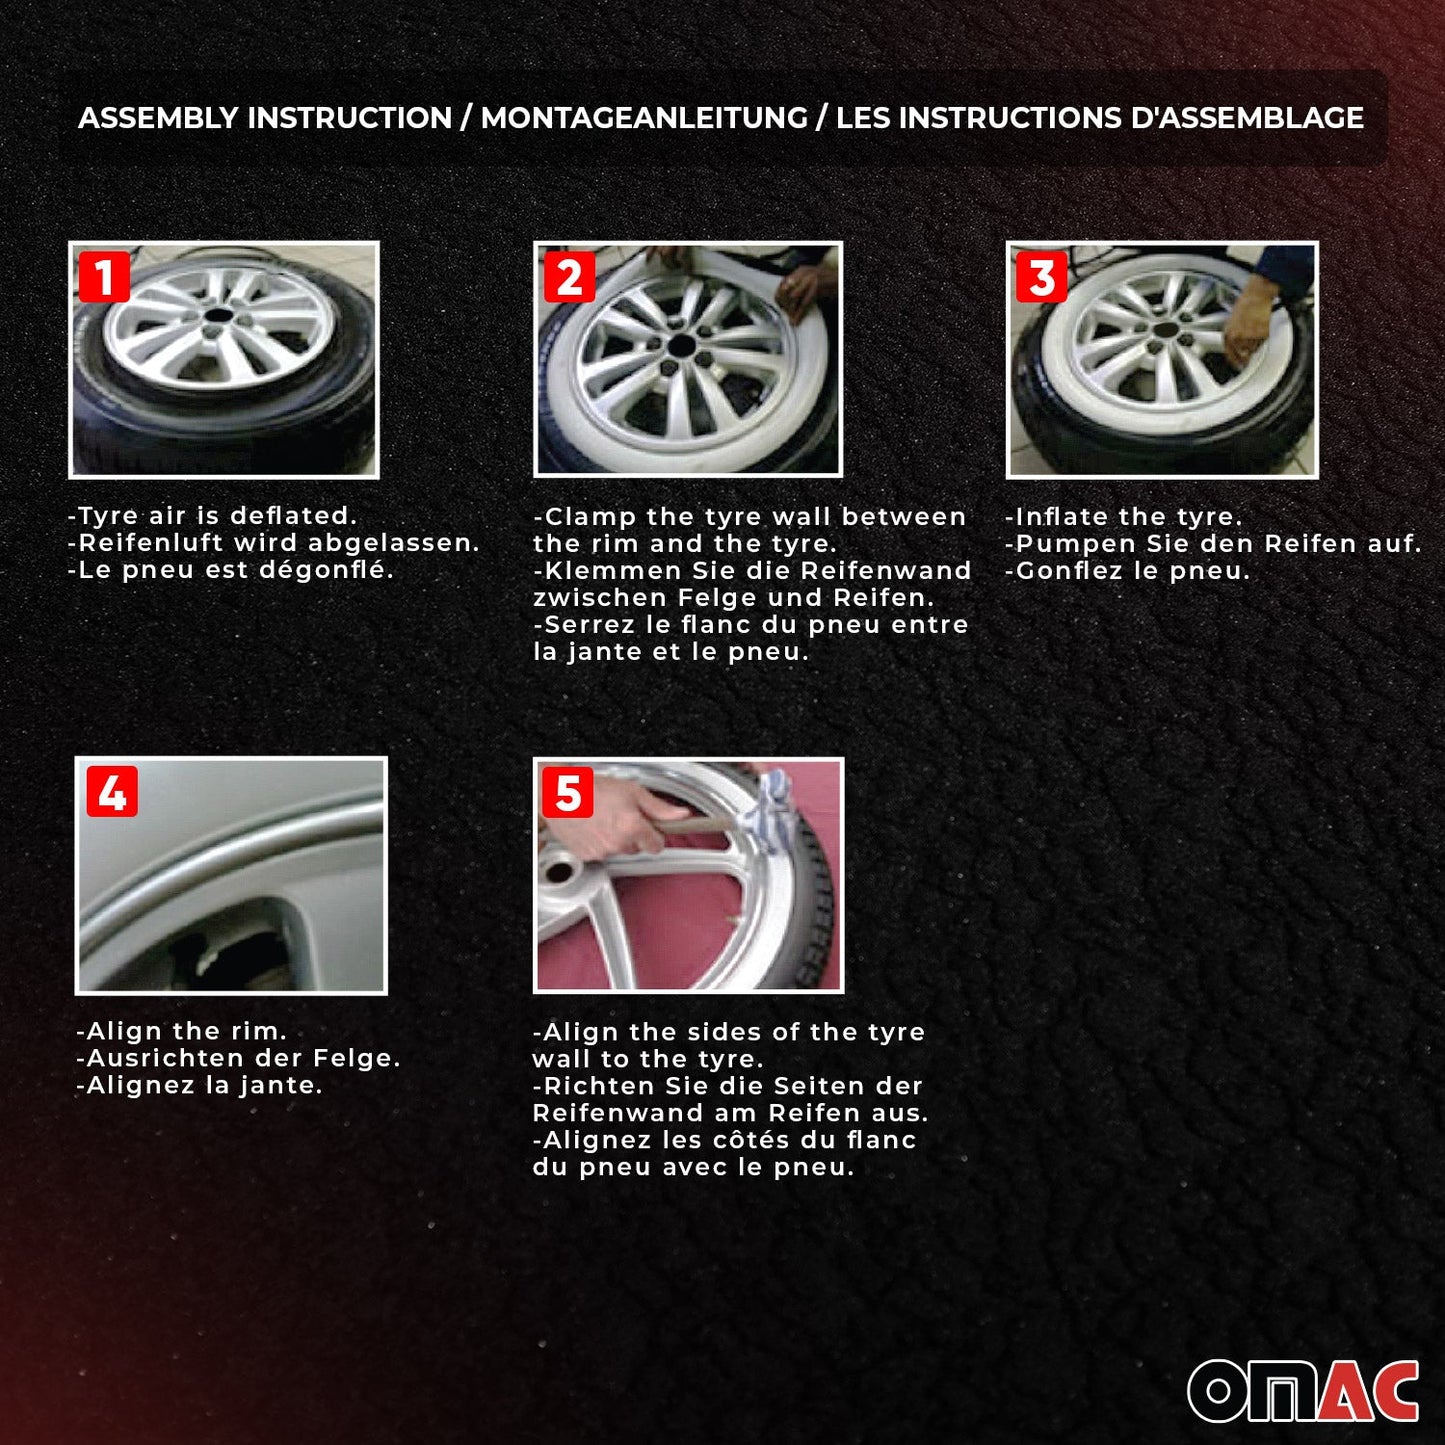 OMAC 15" Tire Wall Portawall Rims Sidewall Rubber Ring for Toyota Set White 4x U023818